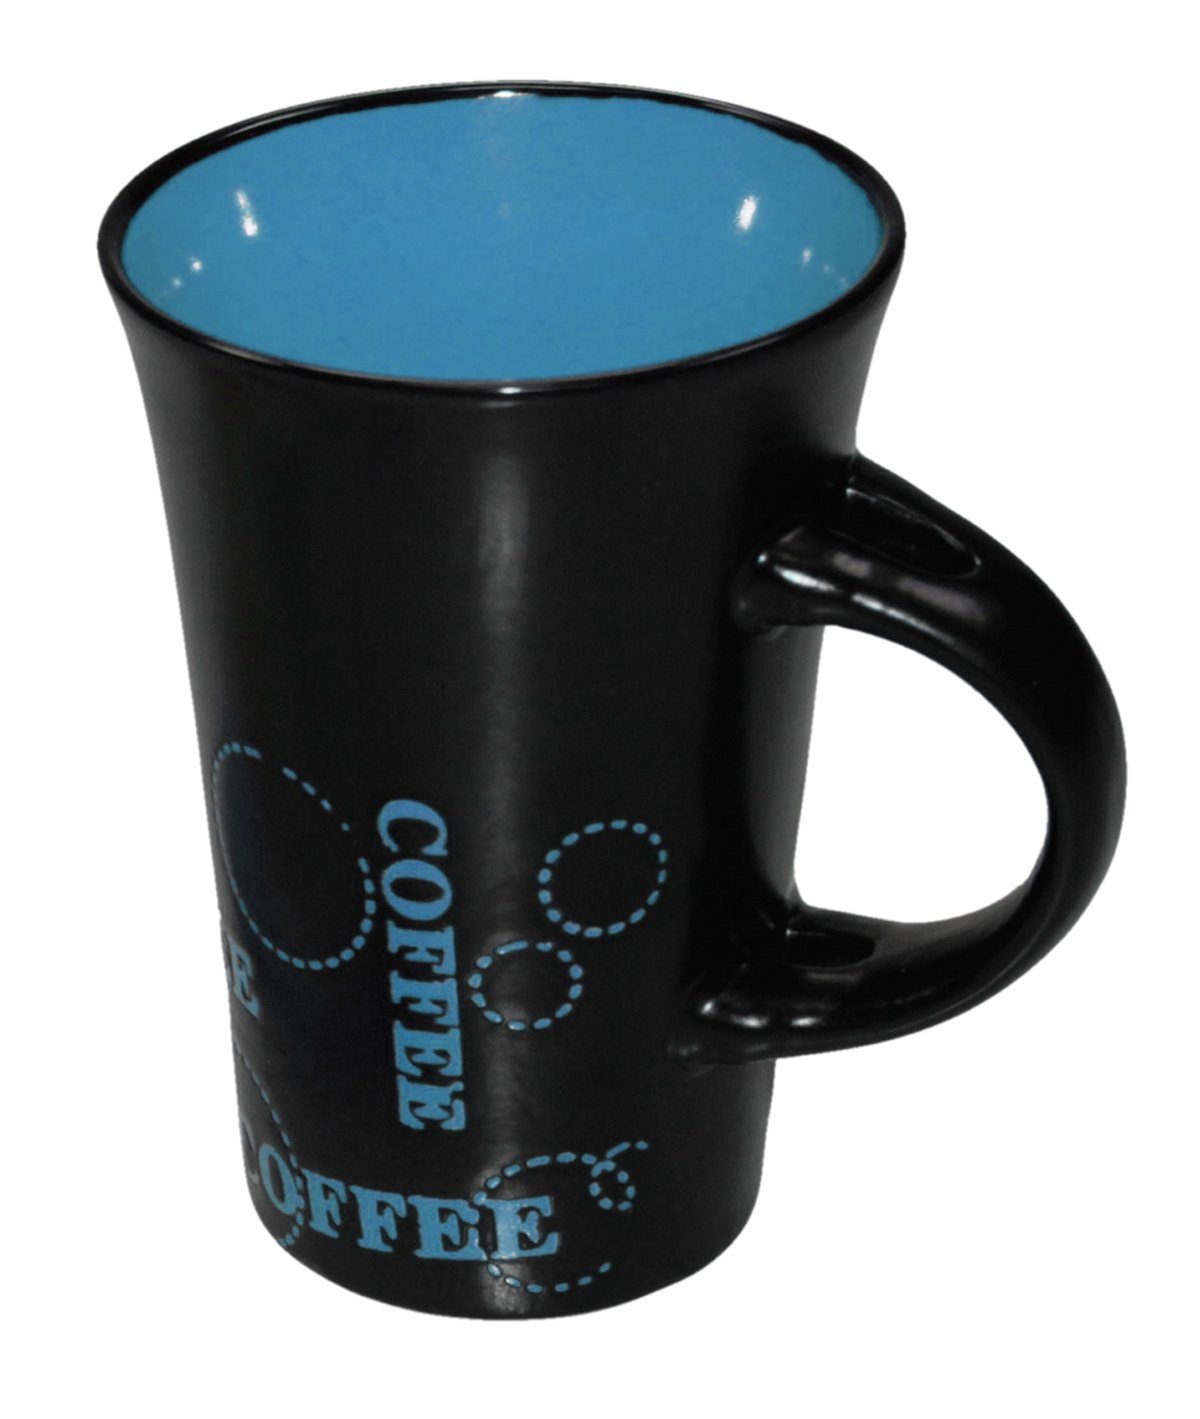 Haus und Deko passend bunt Blau Keramik Kaffeebecher Kaffeetasse Tasse XL Keramik schwarz Becher Geschirr-Set (1-tlg)